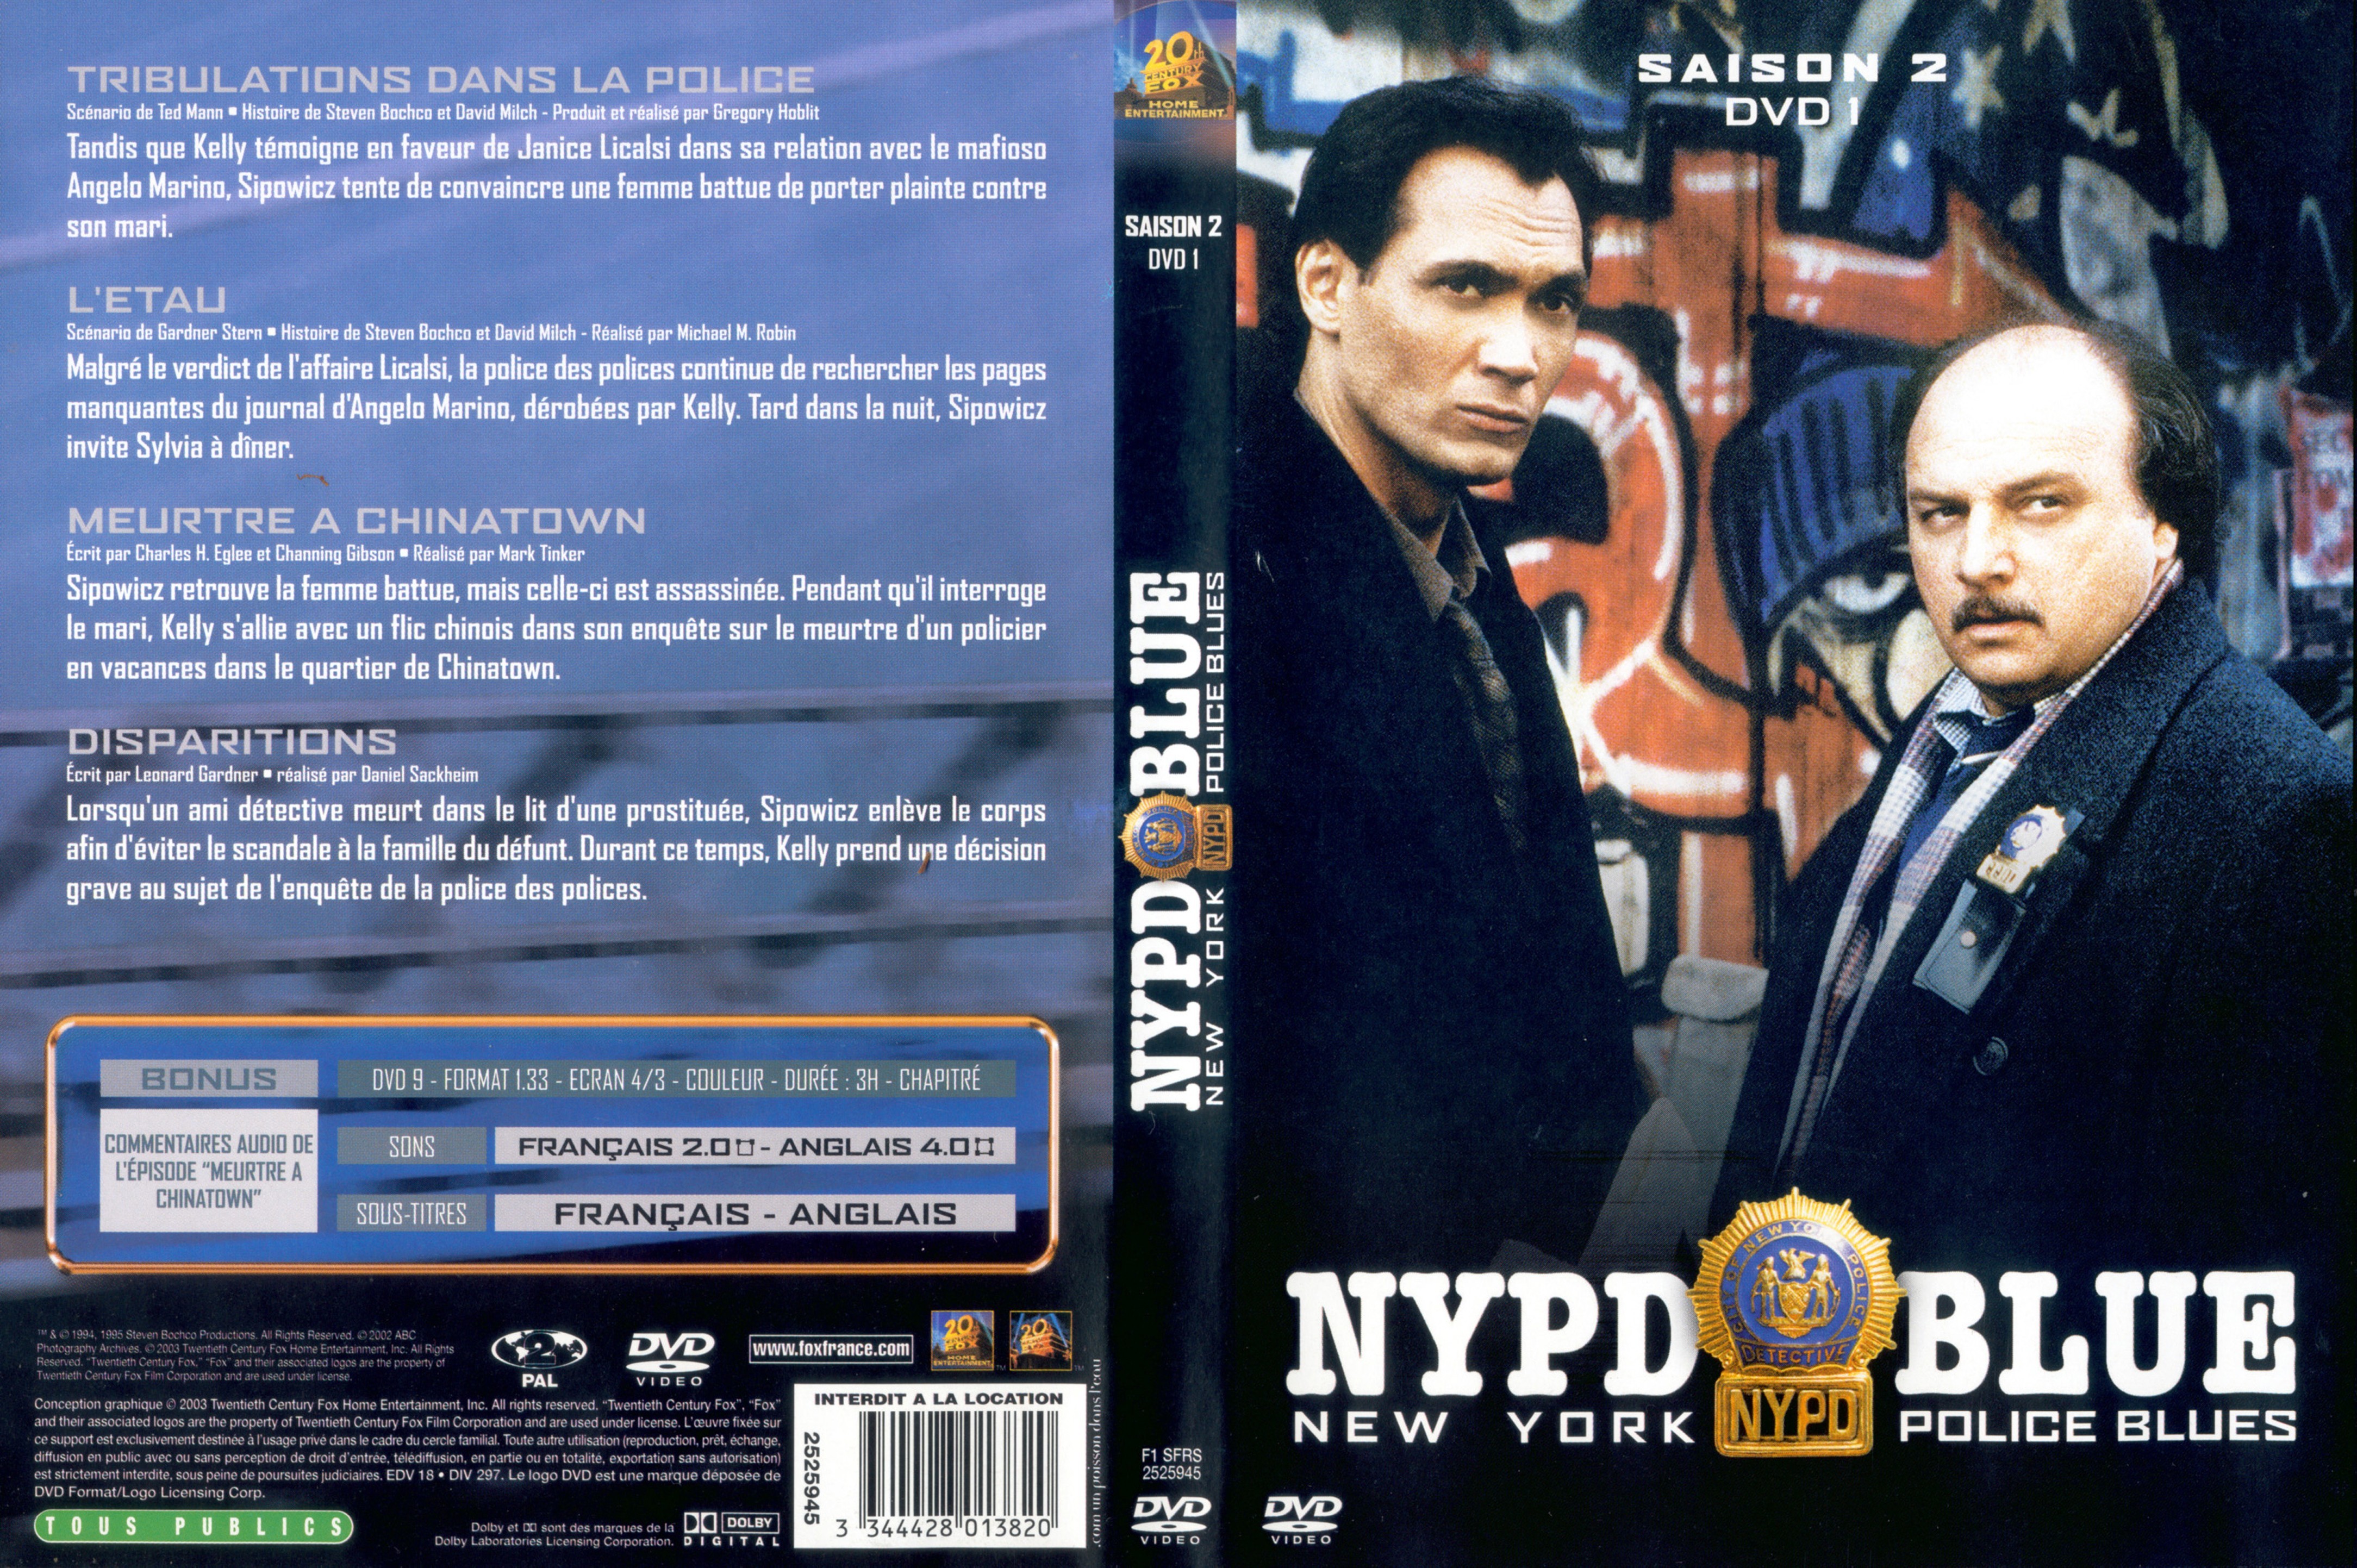 Jaquette DVD NYPD Blue saison 02 dvd 01